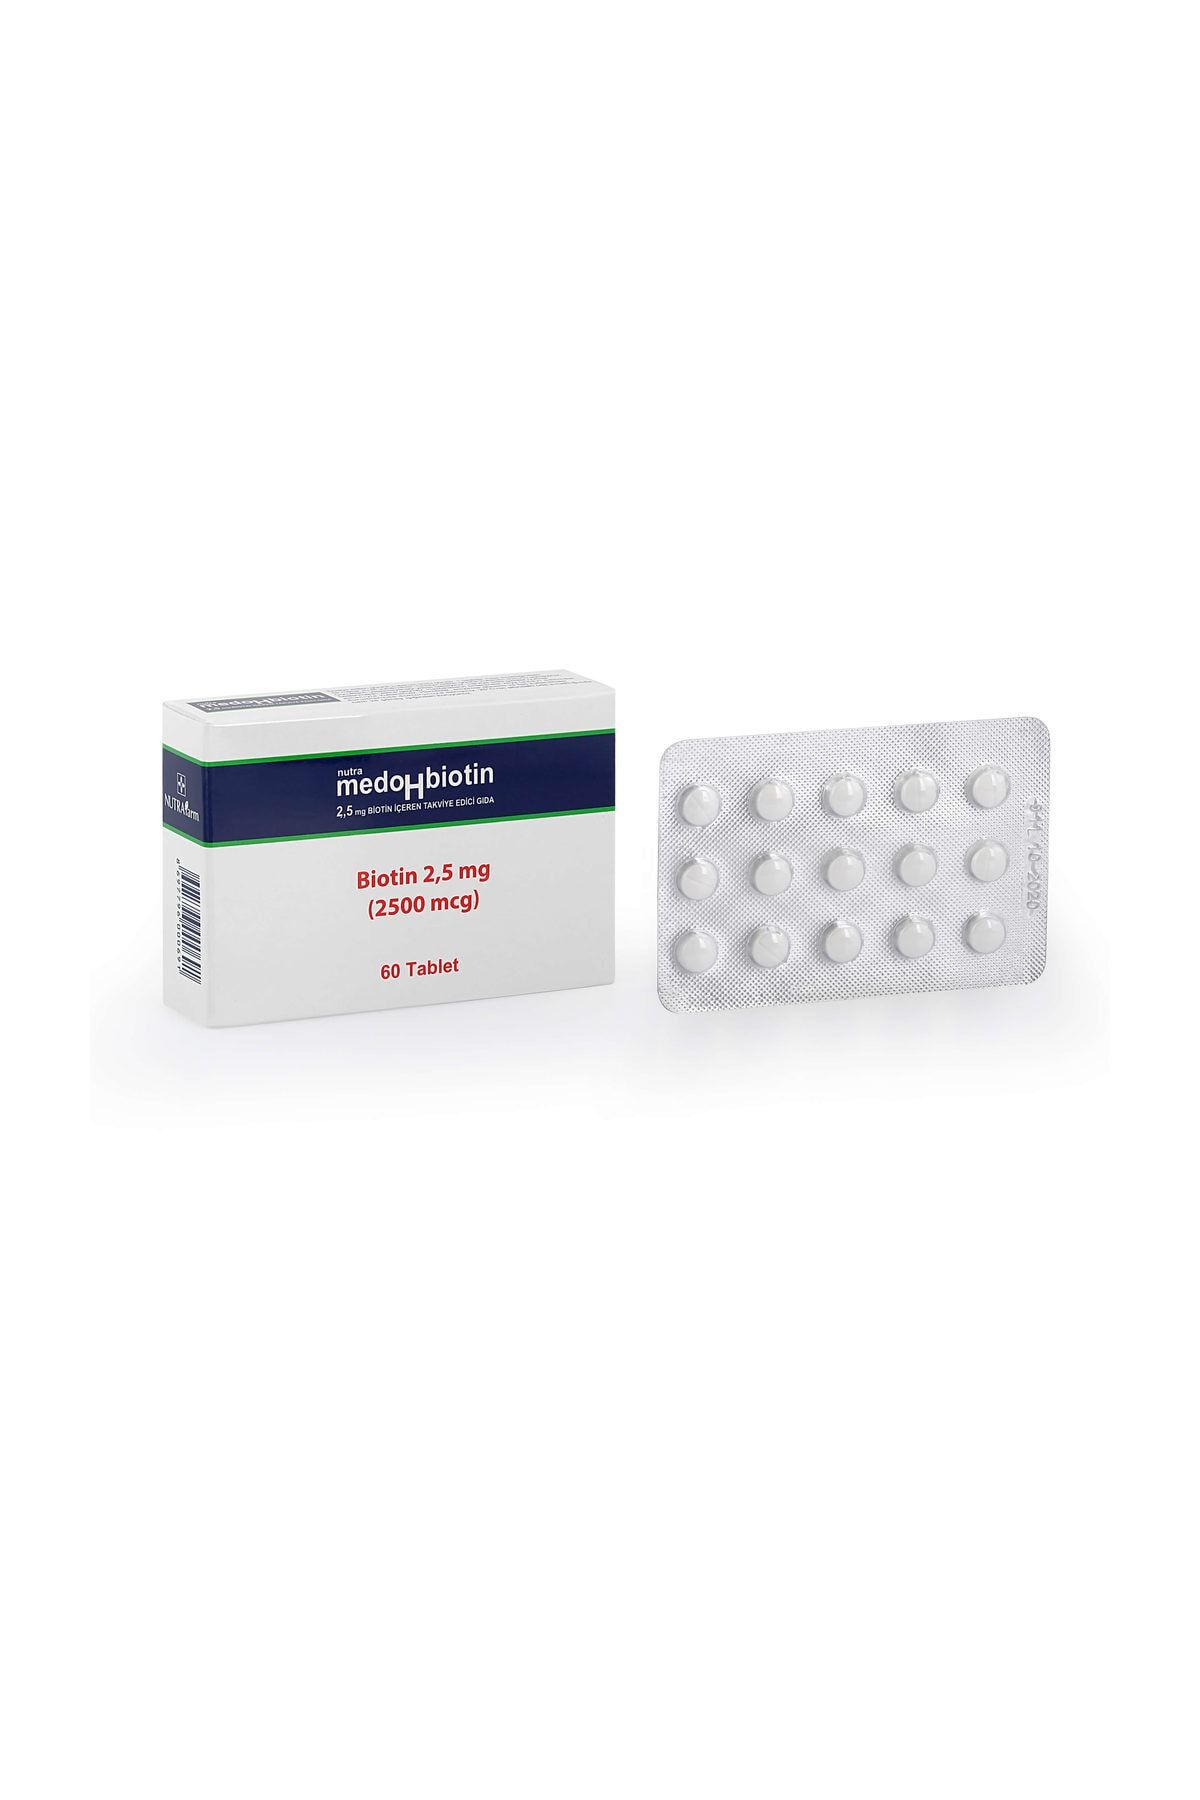 Dermoskin Saç Bakımı Saç Dökülmesi Tırnak Bakımı MedoHbiotin 2,5 mg 60 Tablet